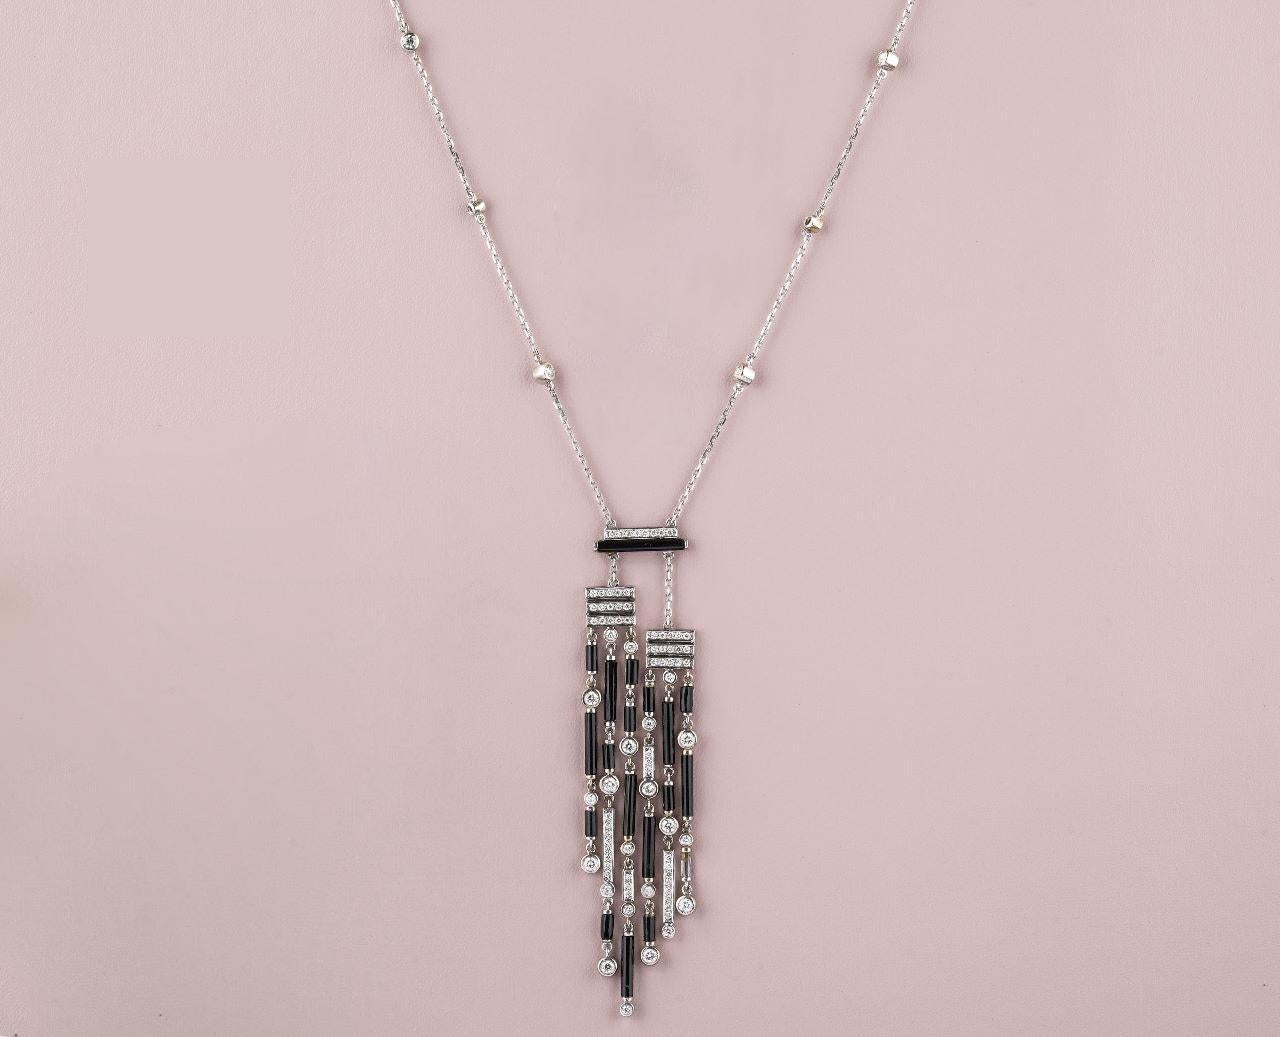 Die Halskette aus schwarzem Onyx und Diamanten ist ein fesselndes und modernes Schmuckstück, das aus massivem 18-karätigem Gold gefertigt ist. Die Halskette zeigt eine Kombination aus schwarzen rechteckigen Stäben und Perlen aus Onyx, einem